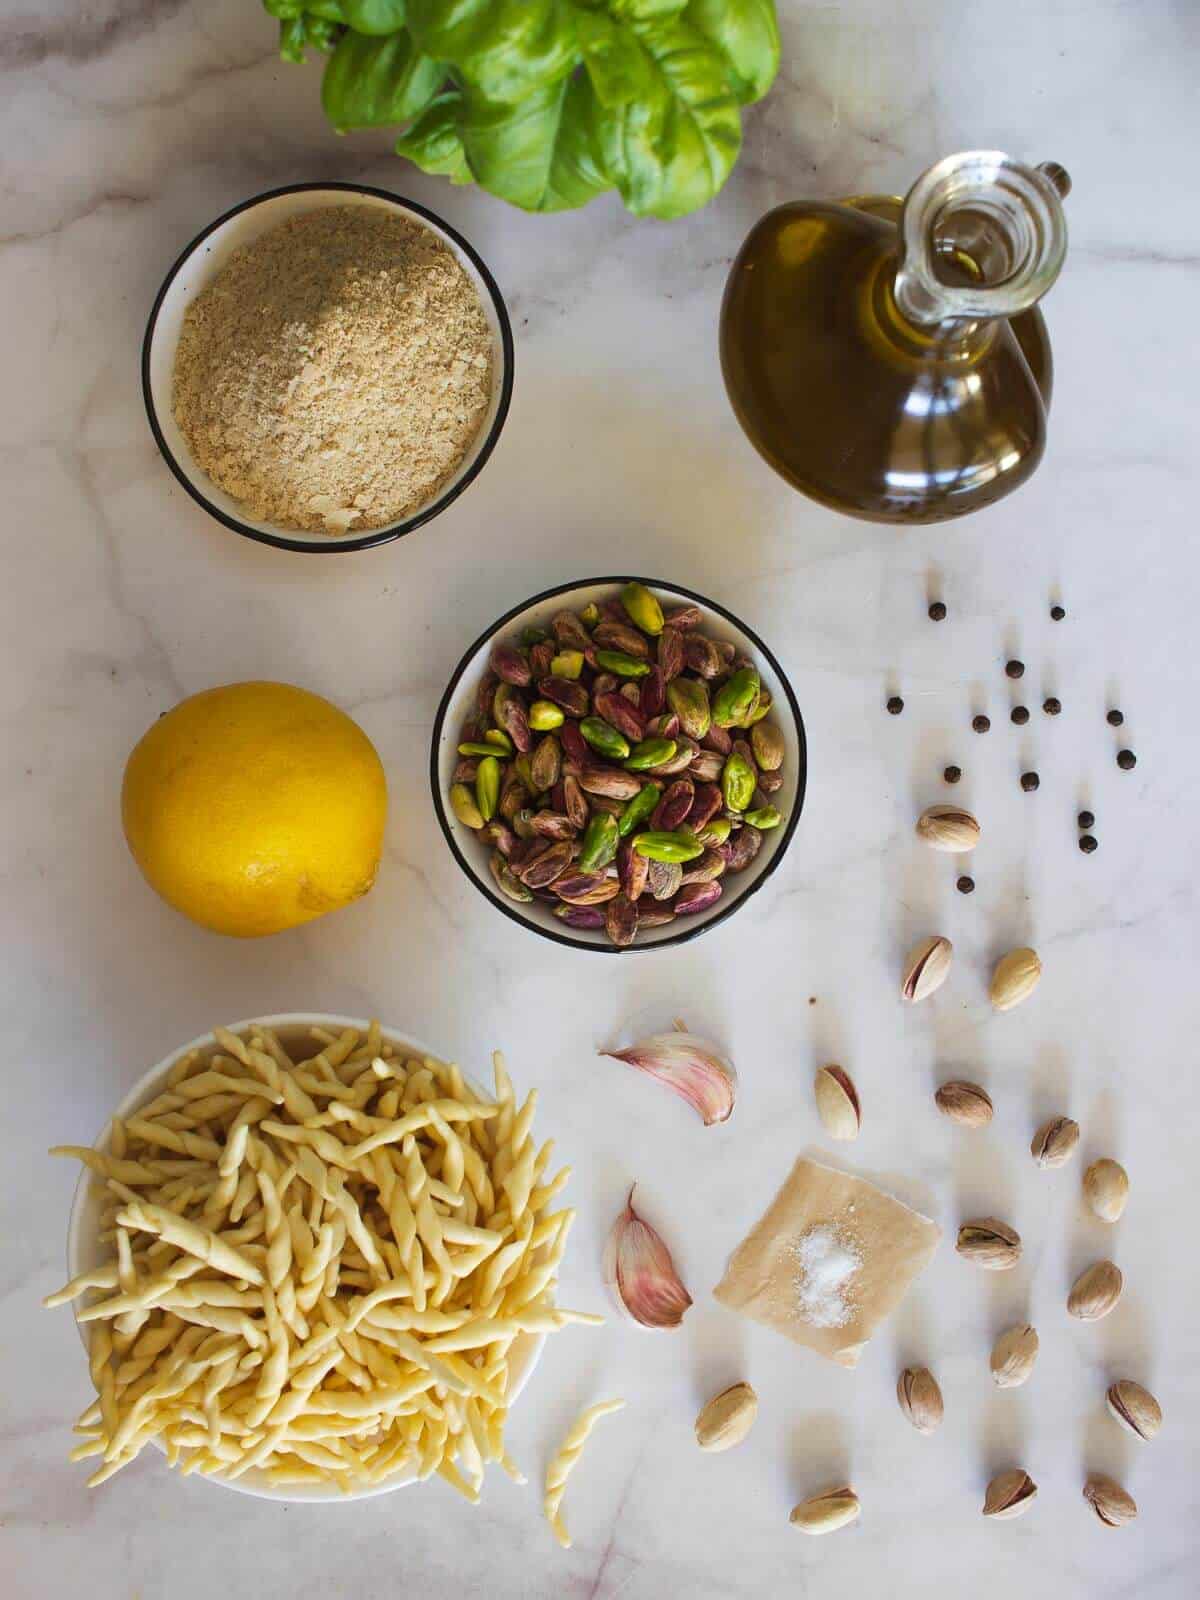 ingredients to make a vegan pesto pistachio pesto sauce